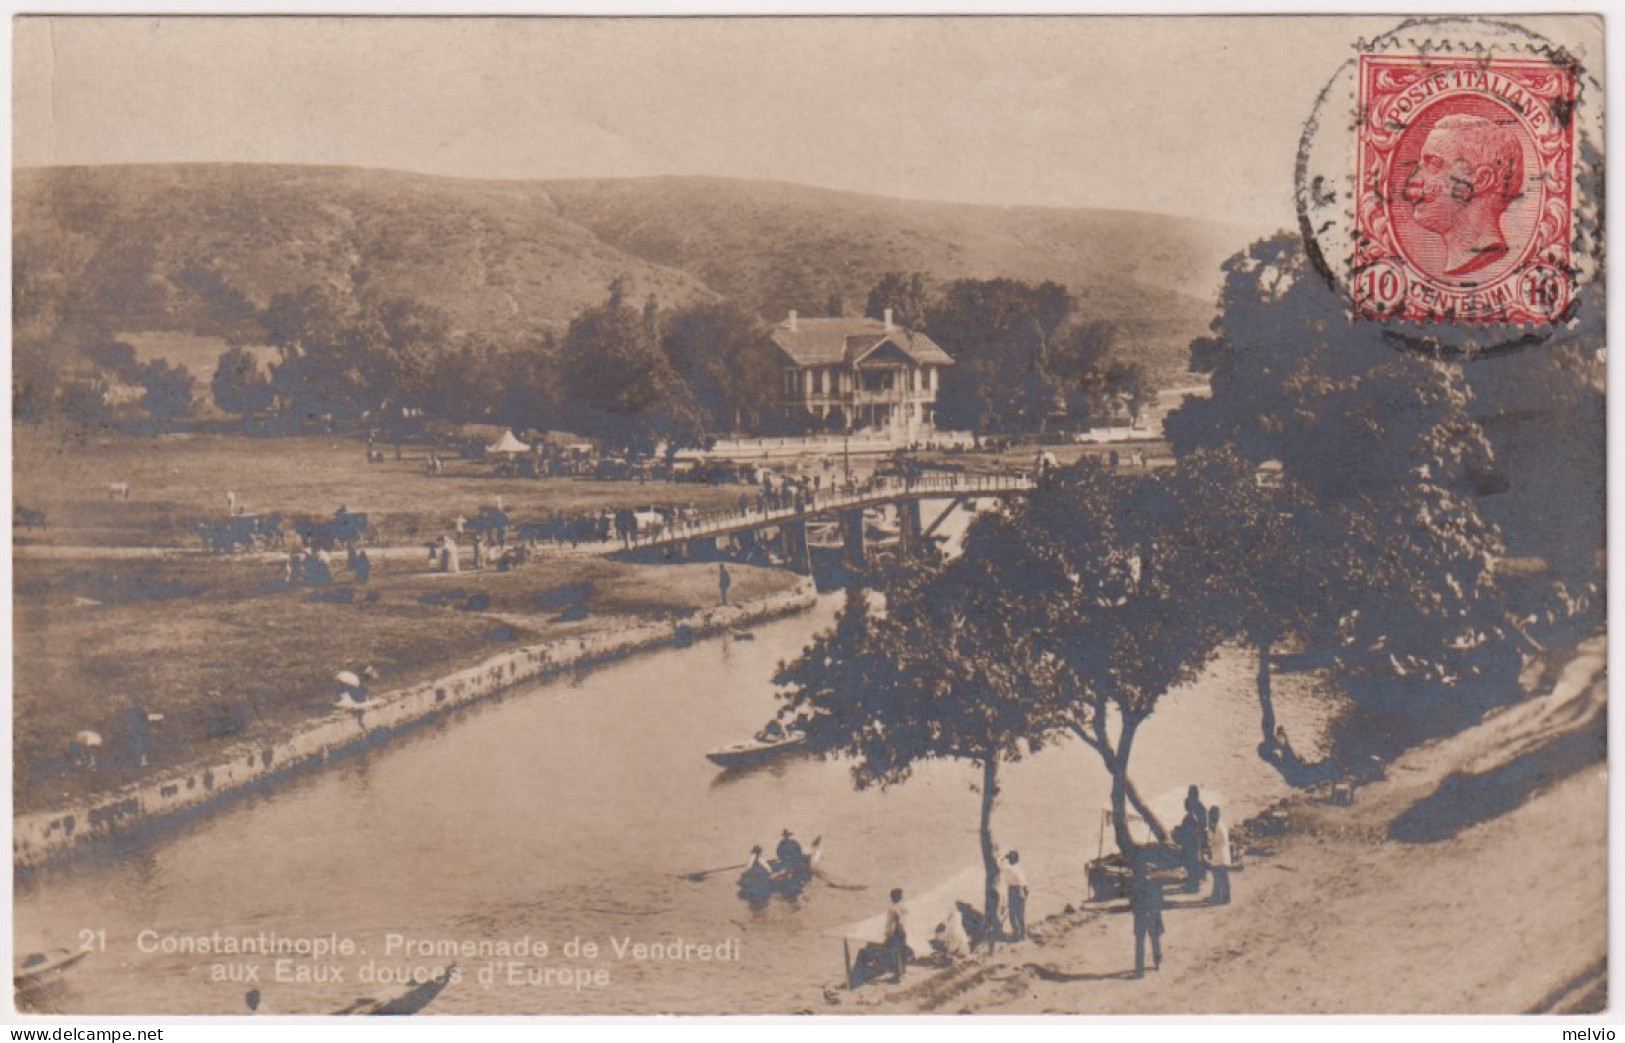 1920-Costantinopoli Promenade De Venndredi Posta Militare 15 Del 7.8 (Turchia) - Dirigeables